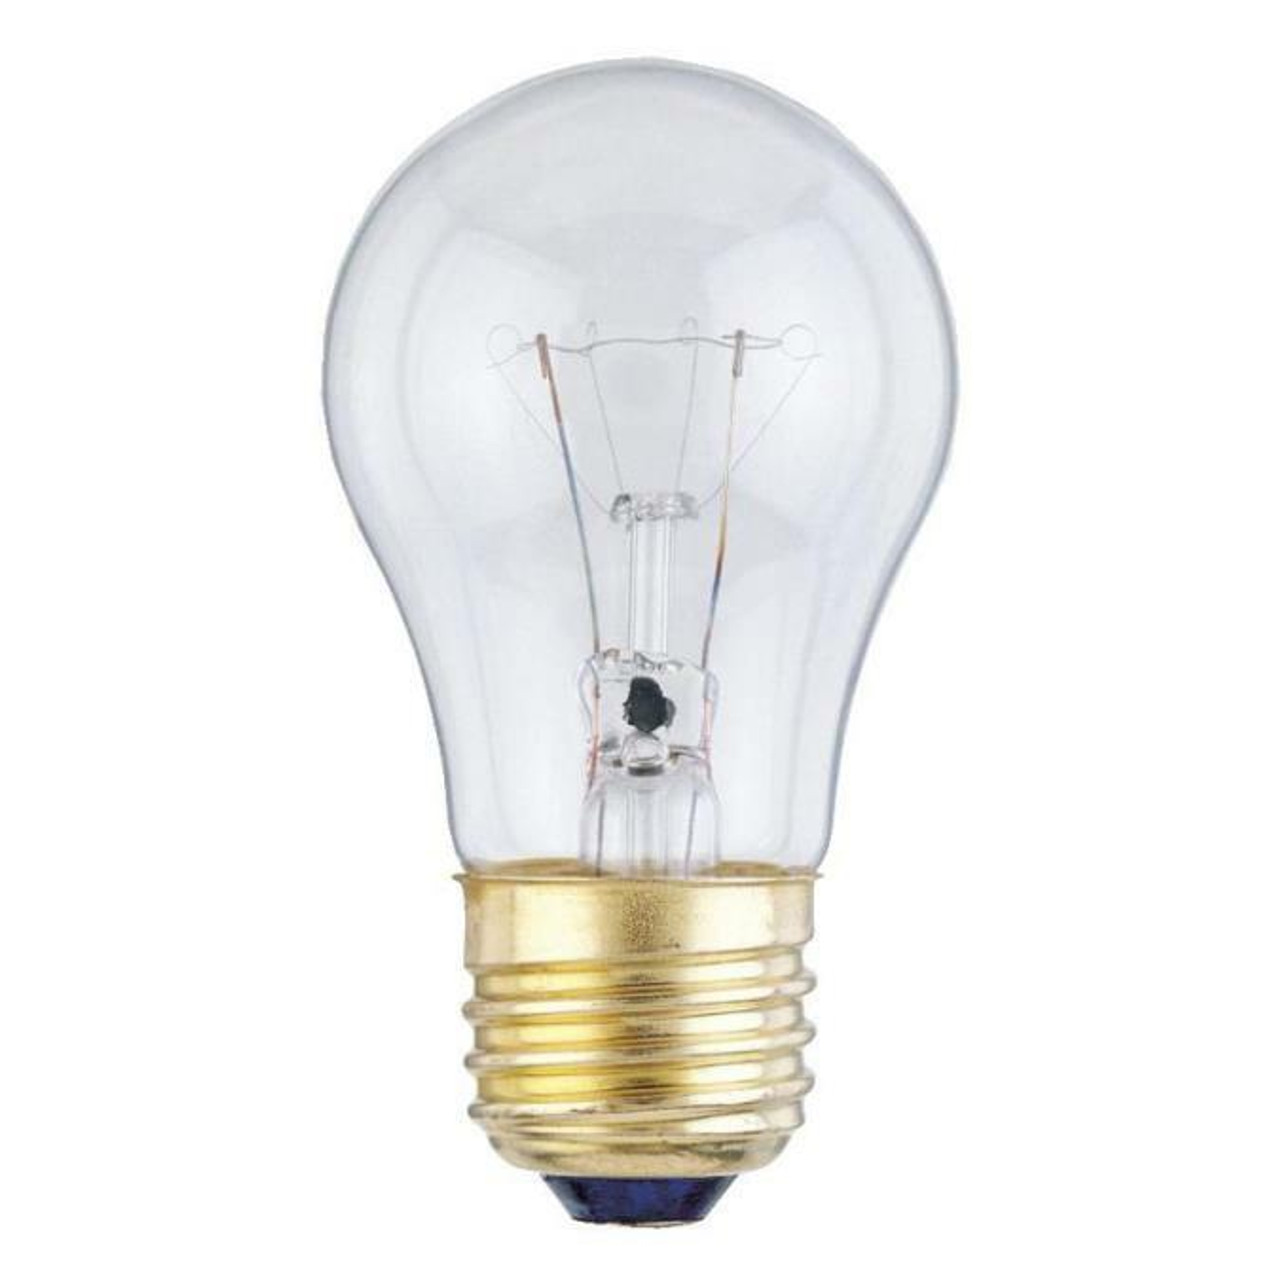 0400100 40 Watt Incandescent Light Bulb 2700K Clear E26 (Medium) 120V